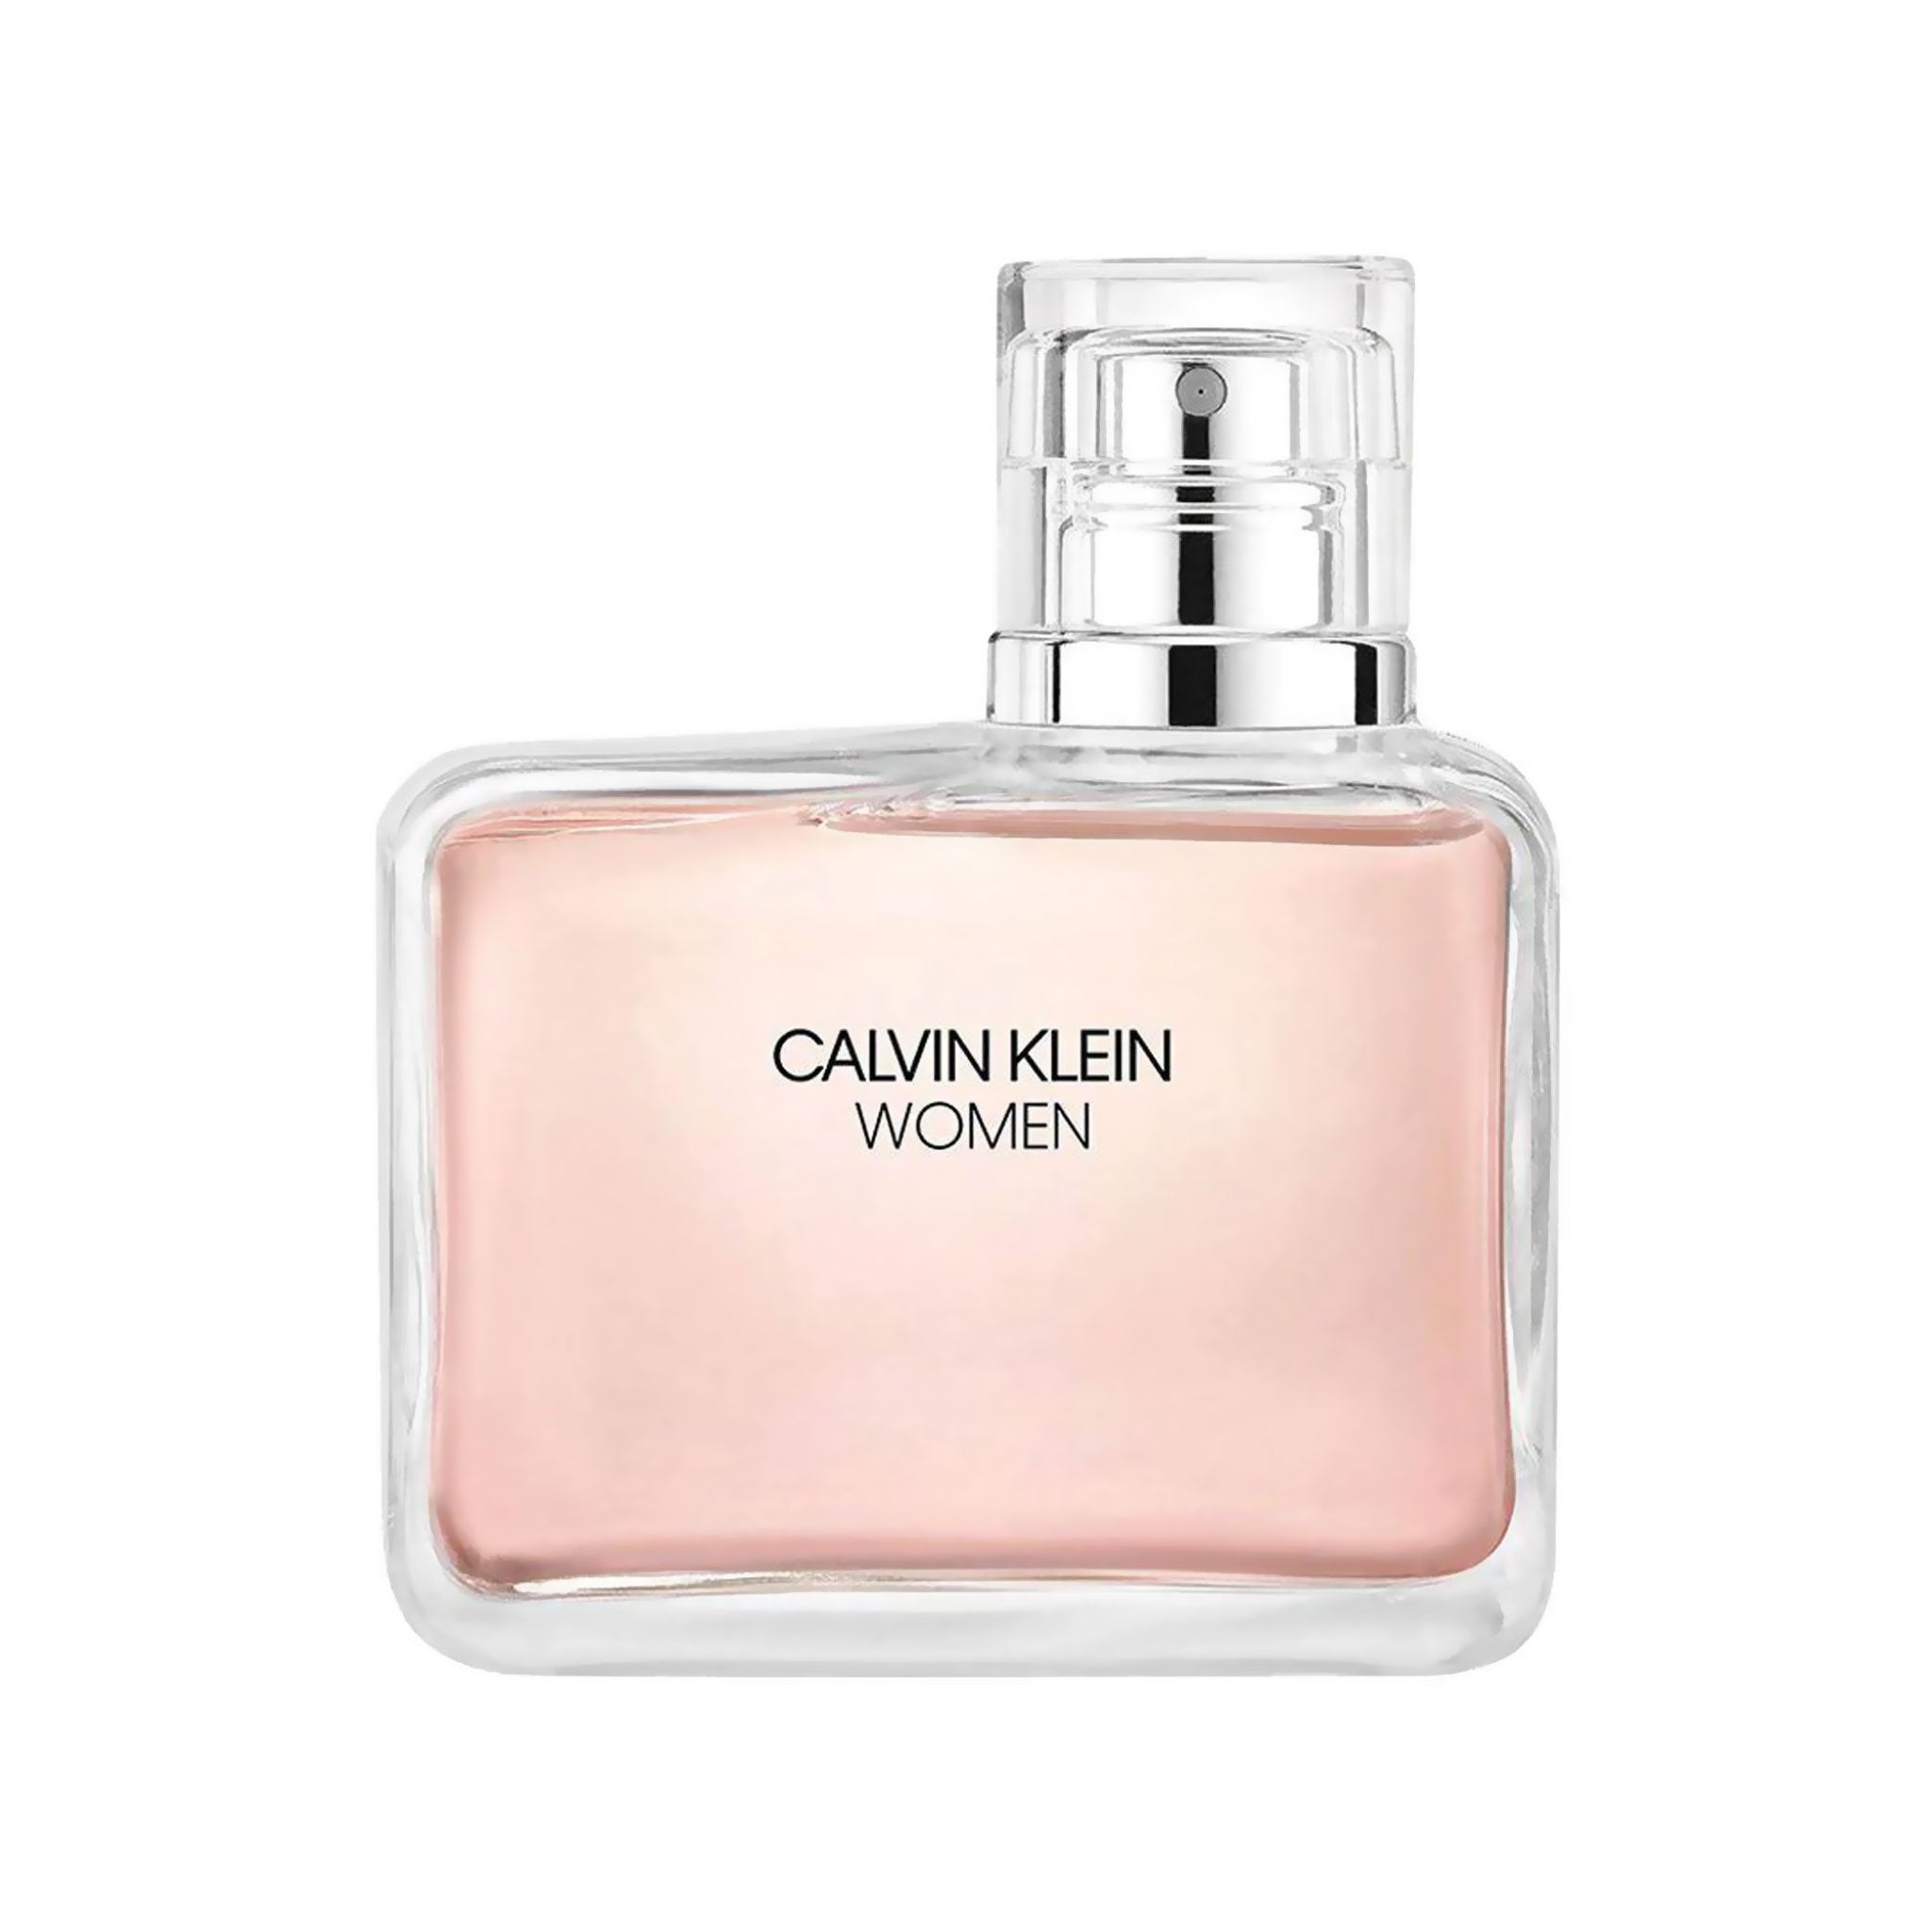 Calvin Klein Women Eau de parfum 100ml